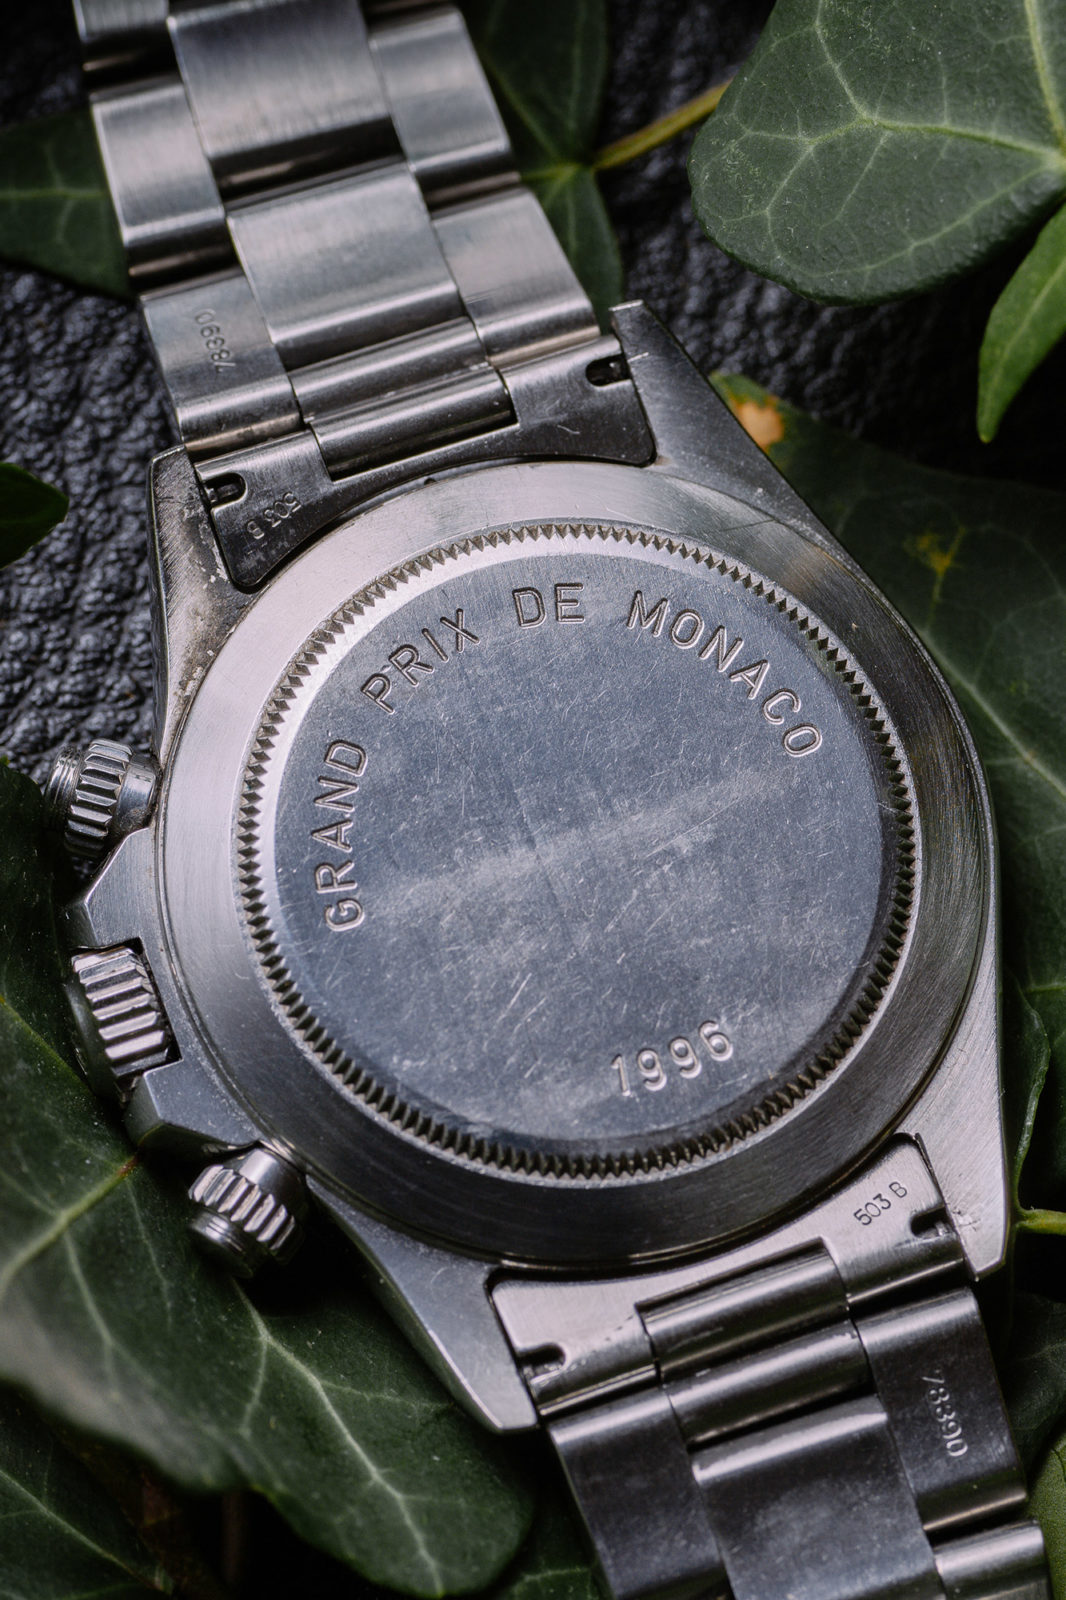 Rolex Daytona Grand Prix de Monaco - Aguttes vente de montres de collection du jeudi 10 décembre